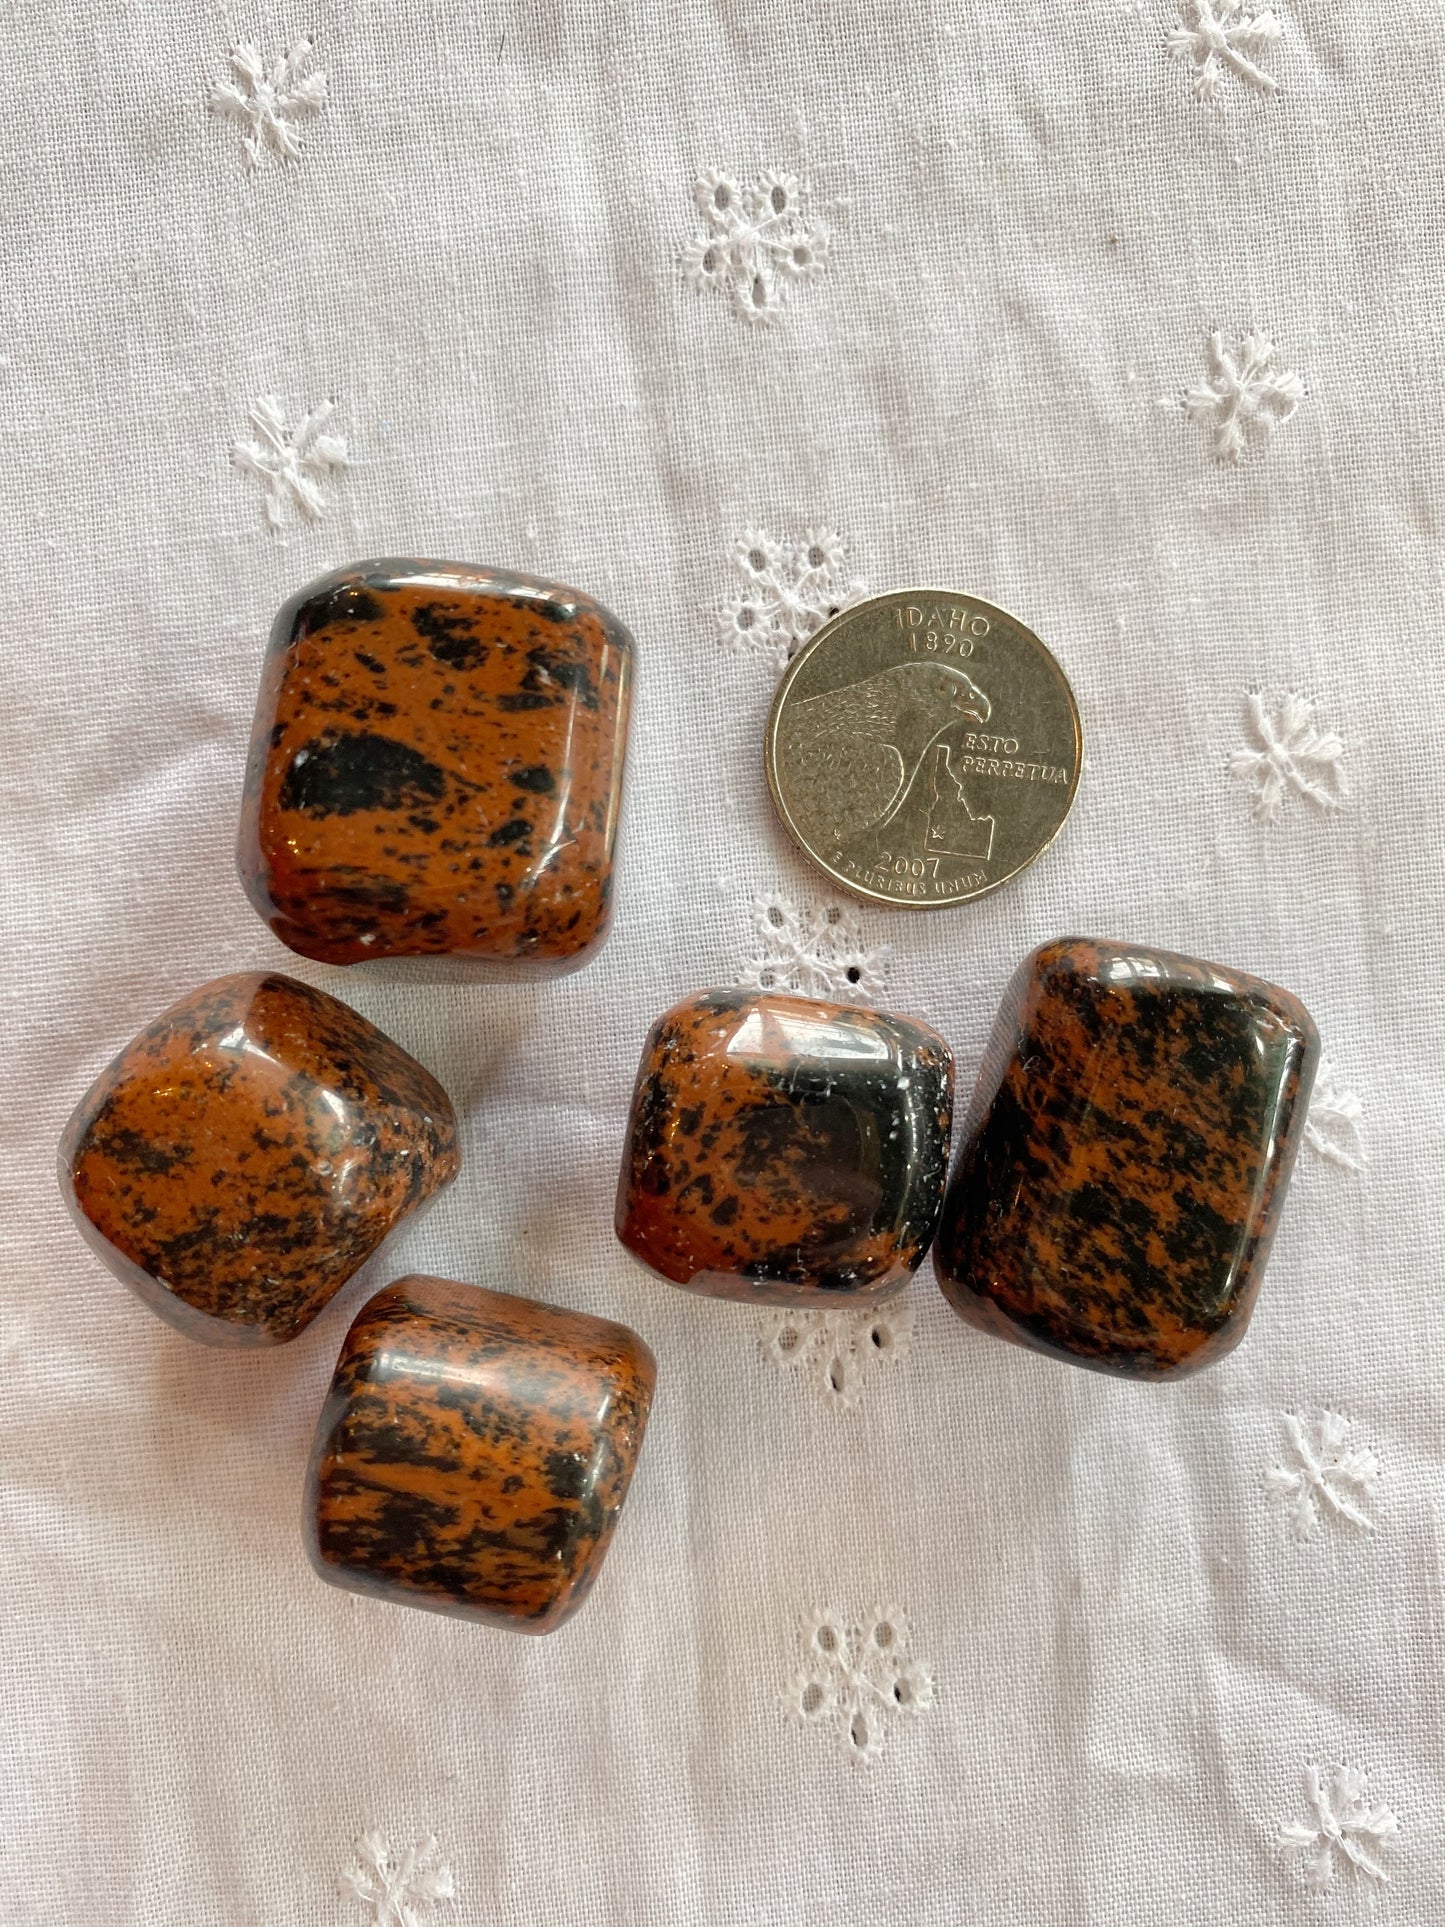 Mahogany Obsidian Tumbled Stones